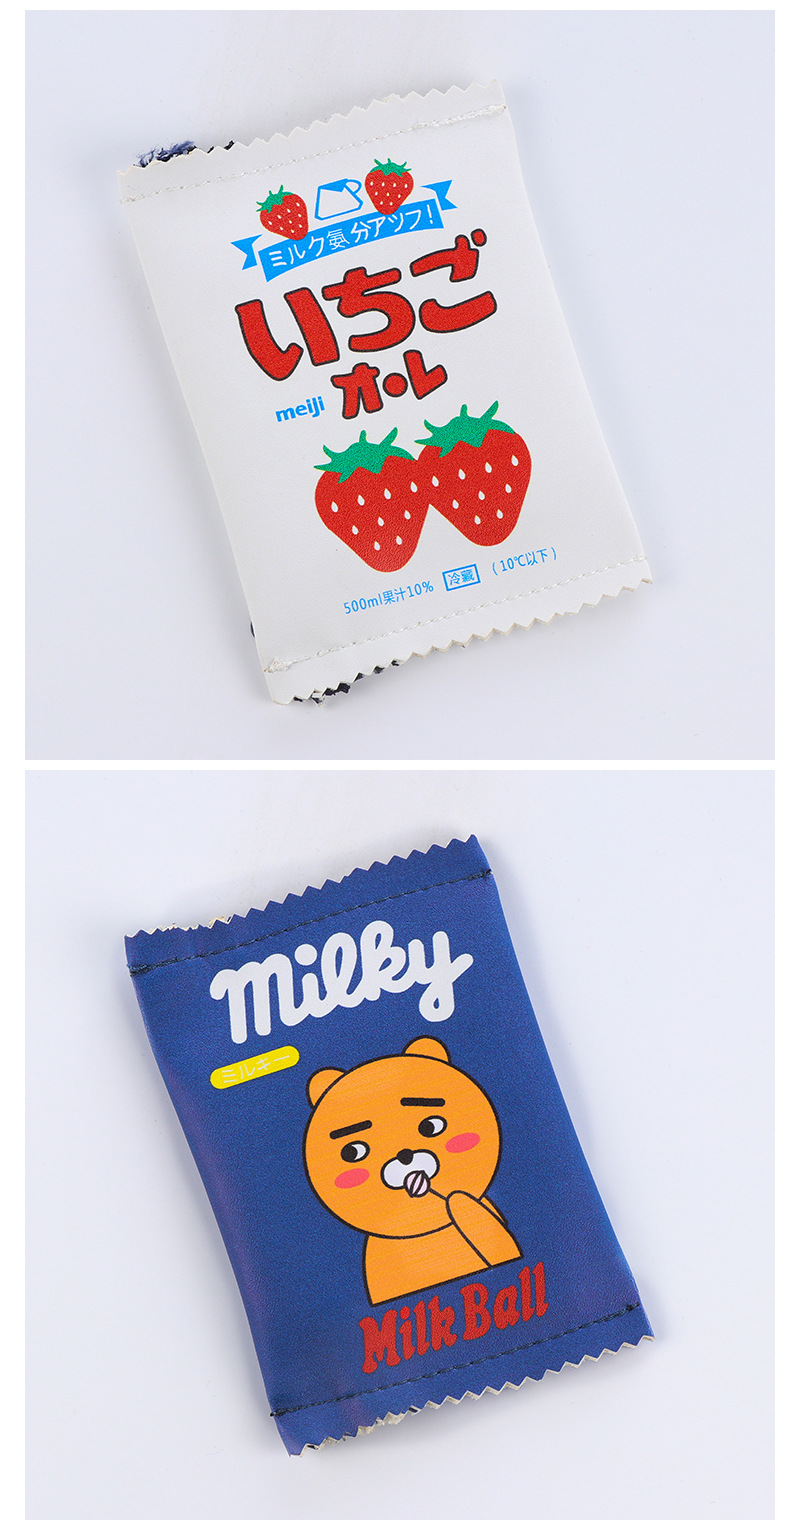 韓國創意趣味起司零食PU零錢包零錢袋錢包硬幣包可愛餅干零錢包女